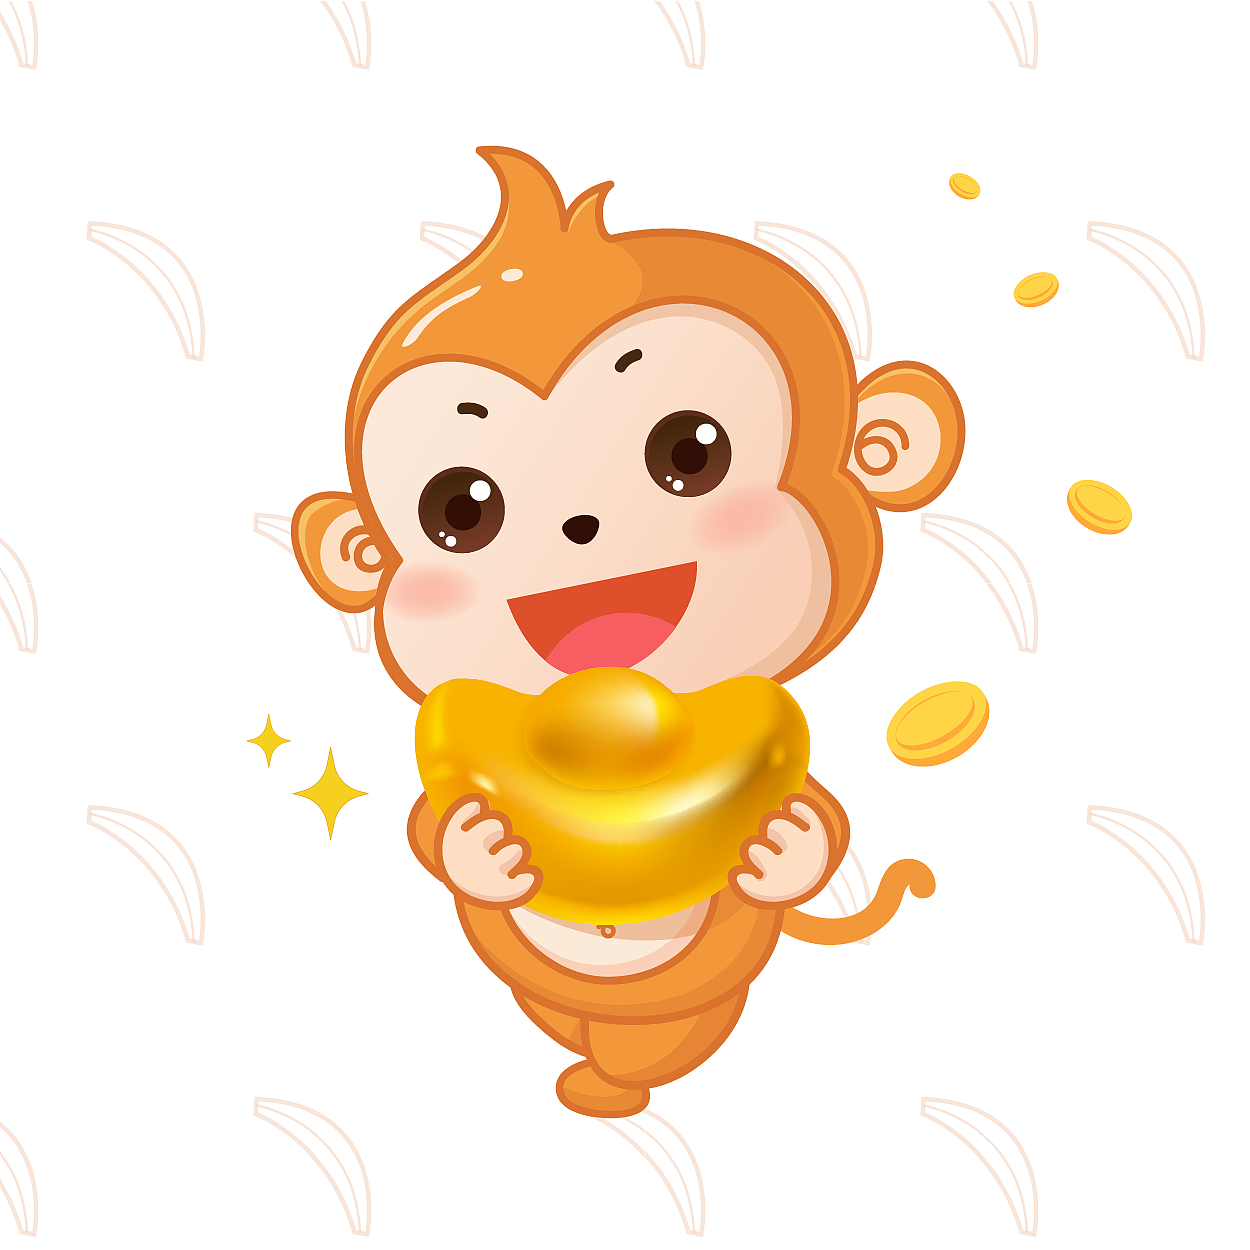 小猴子生日快乐图片-图库-五毛网